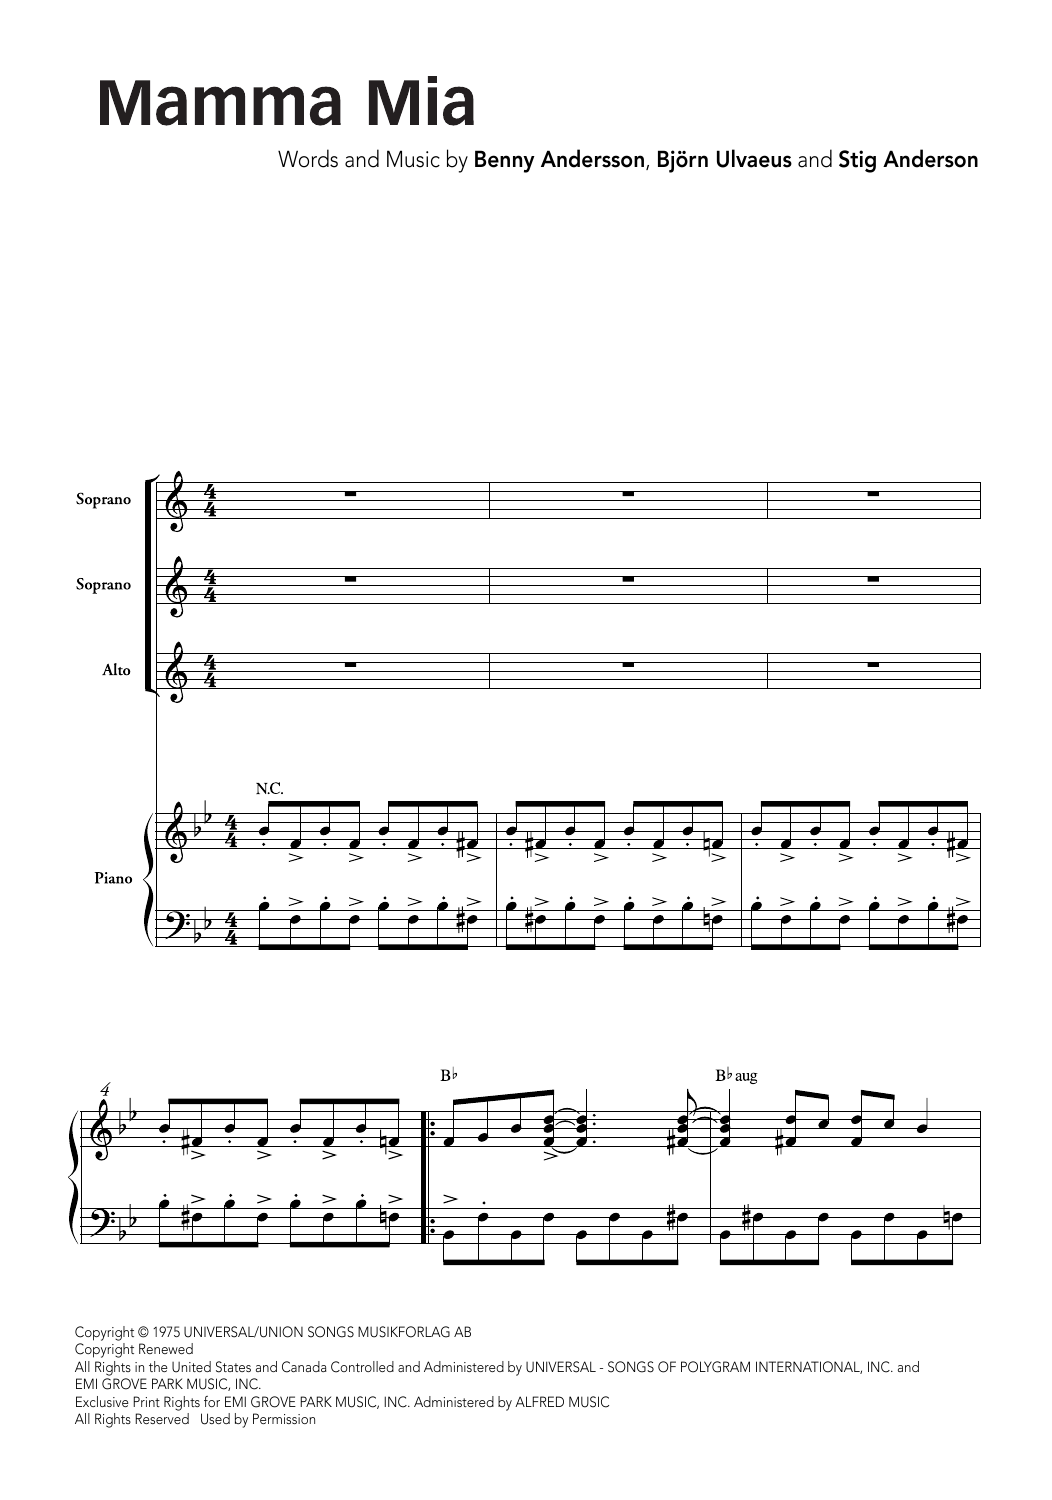 ABBA Mamma Mia (arr. Ralph Allwood & Lora Sansun) Sheet Music Notes & Chords for SATB Choir - Download or Print PDF